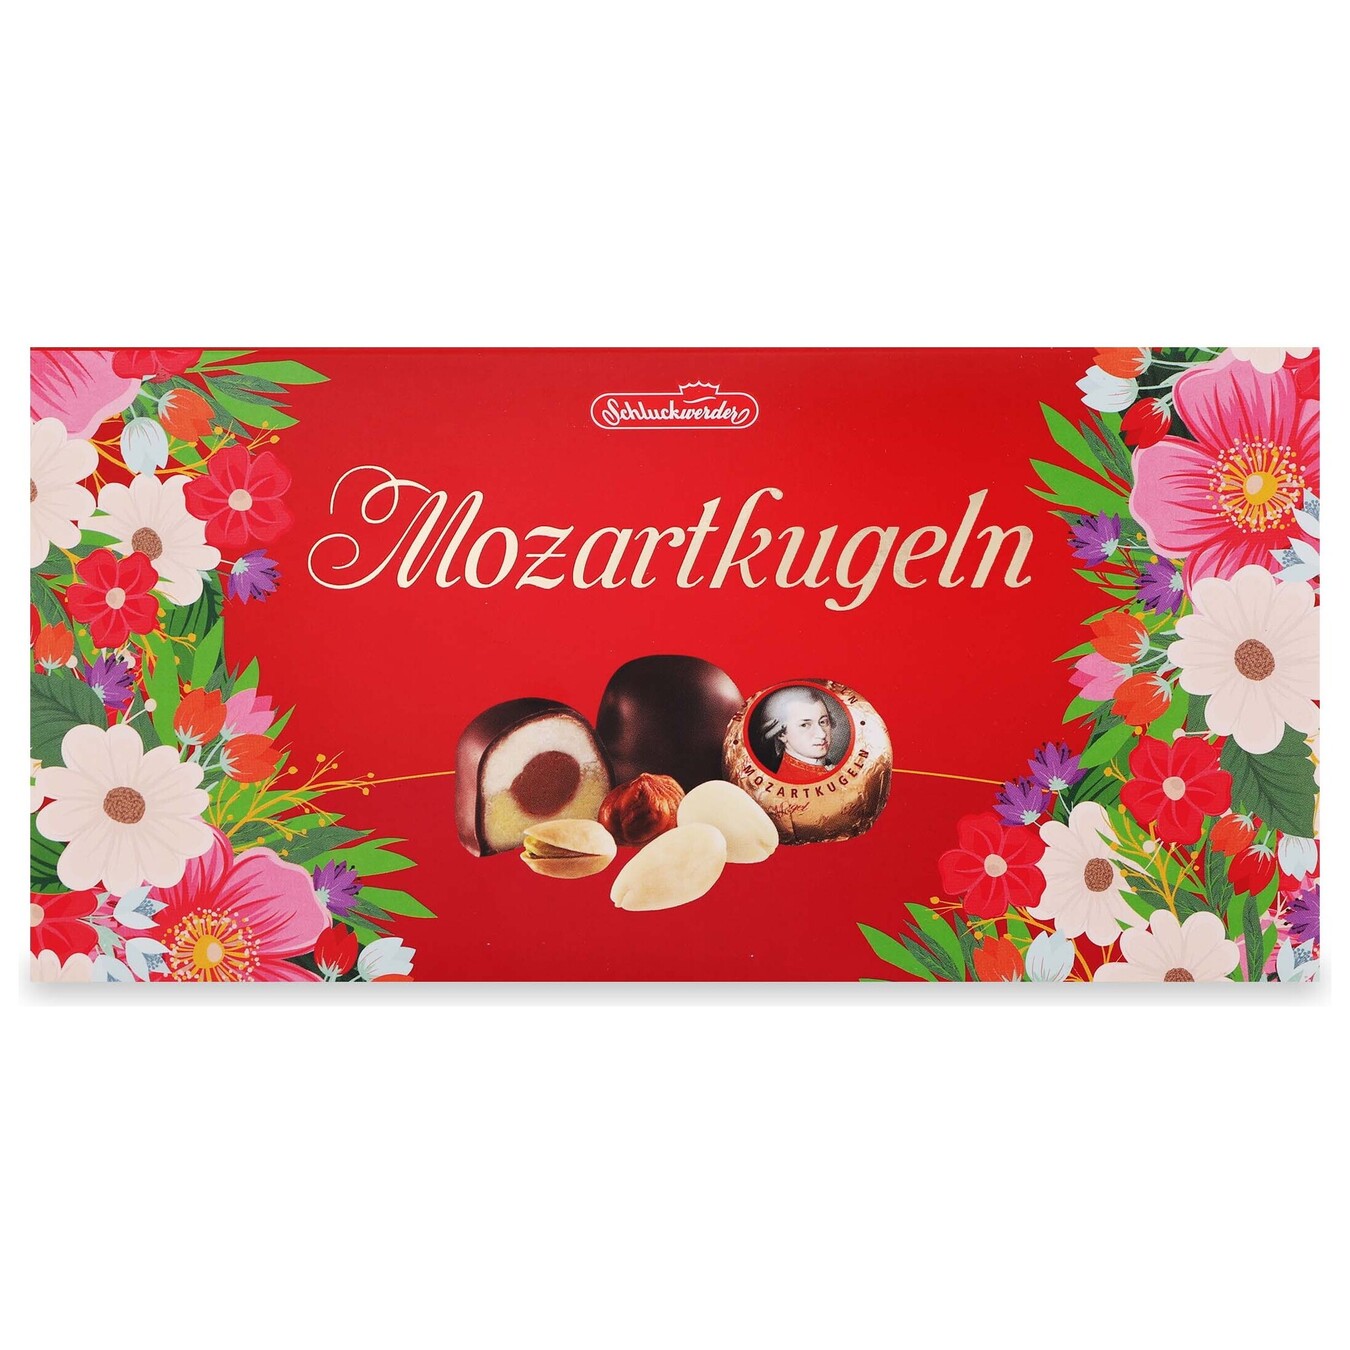 Schluckwerder Mozartkugeln Pistachio Marzipan in Chocolate 200g